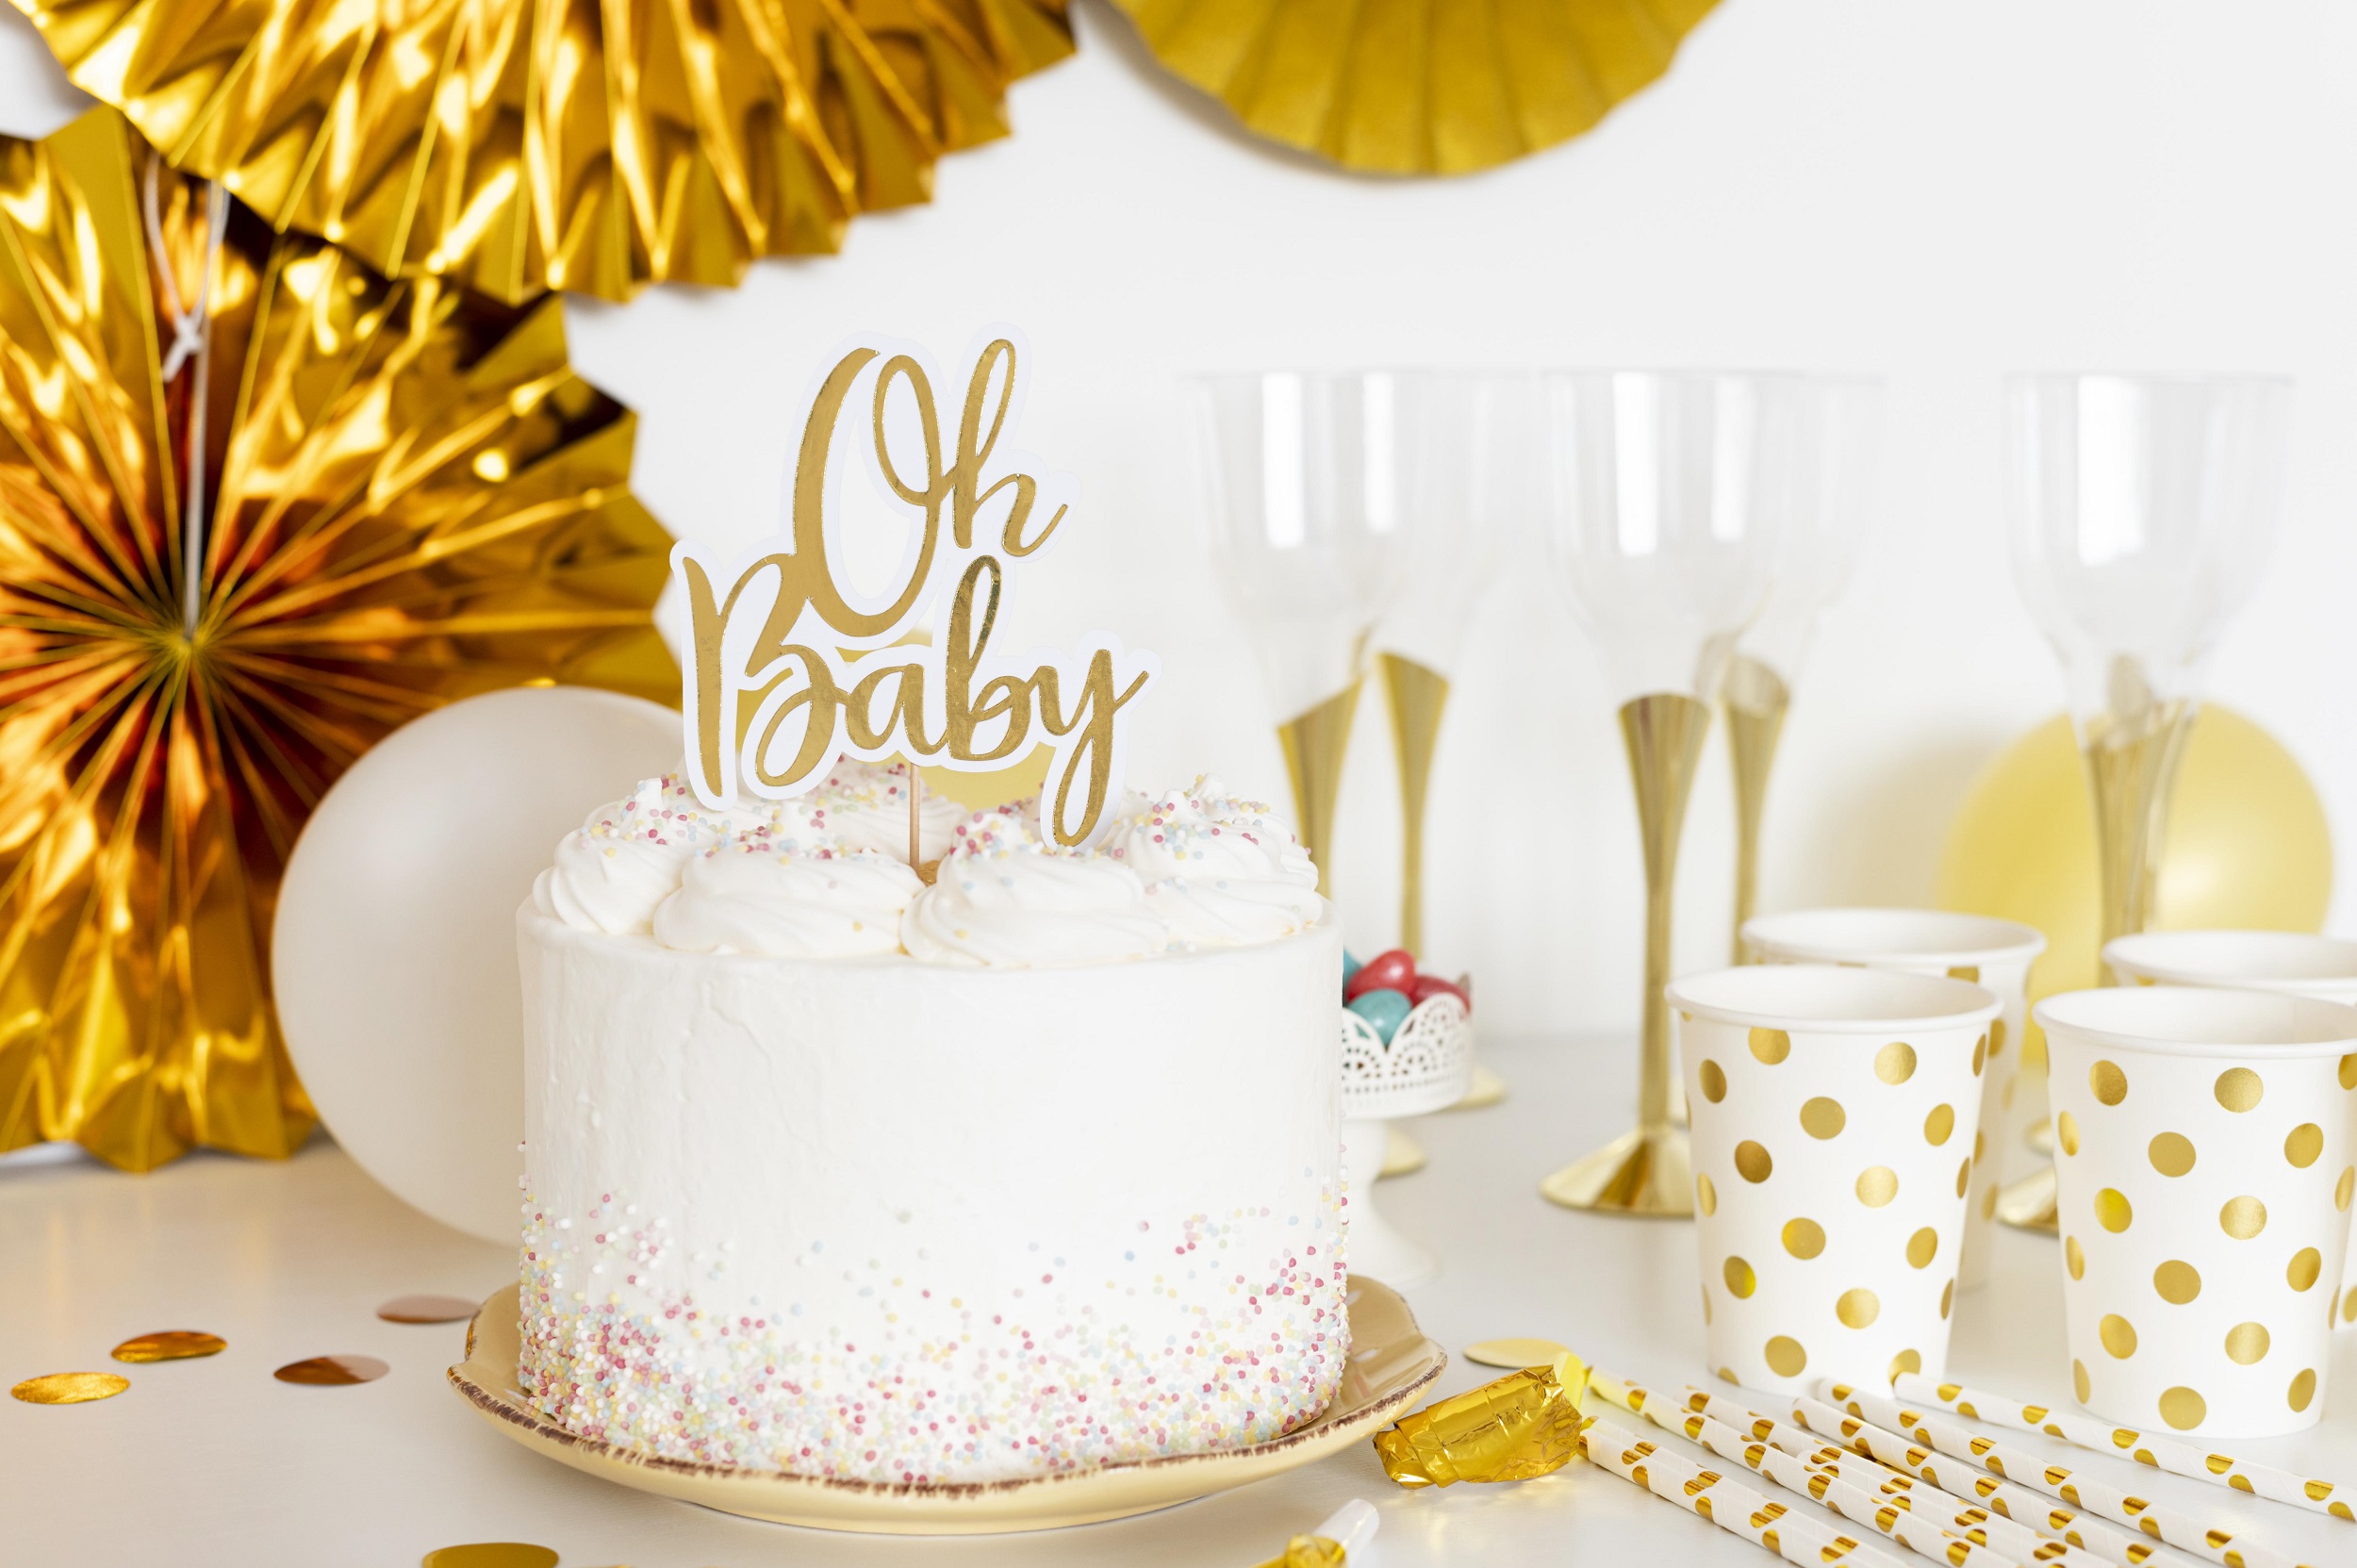 Vista frontal do conceito de bolo de chá de bebê e copos decorativos ao redor tudo em branco e dourado